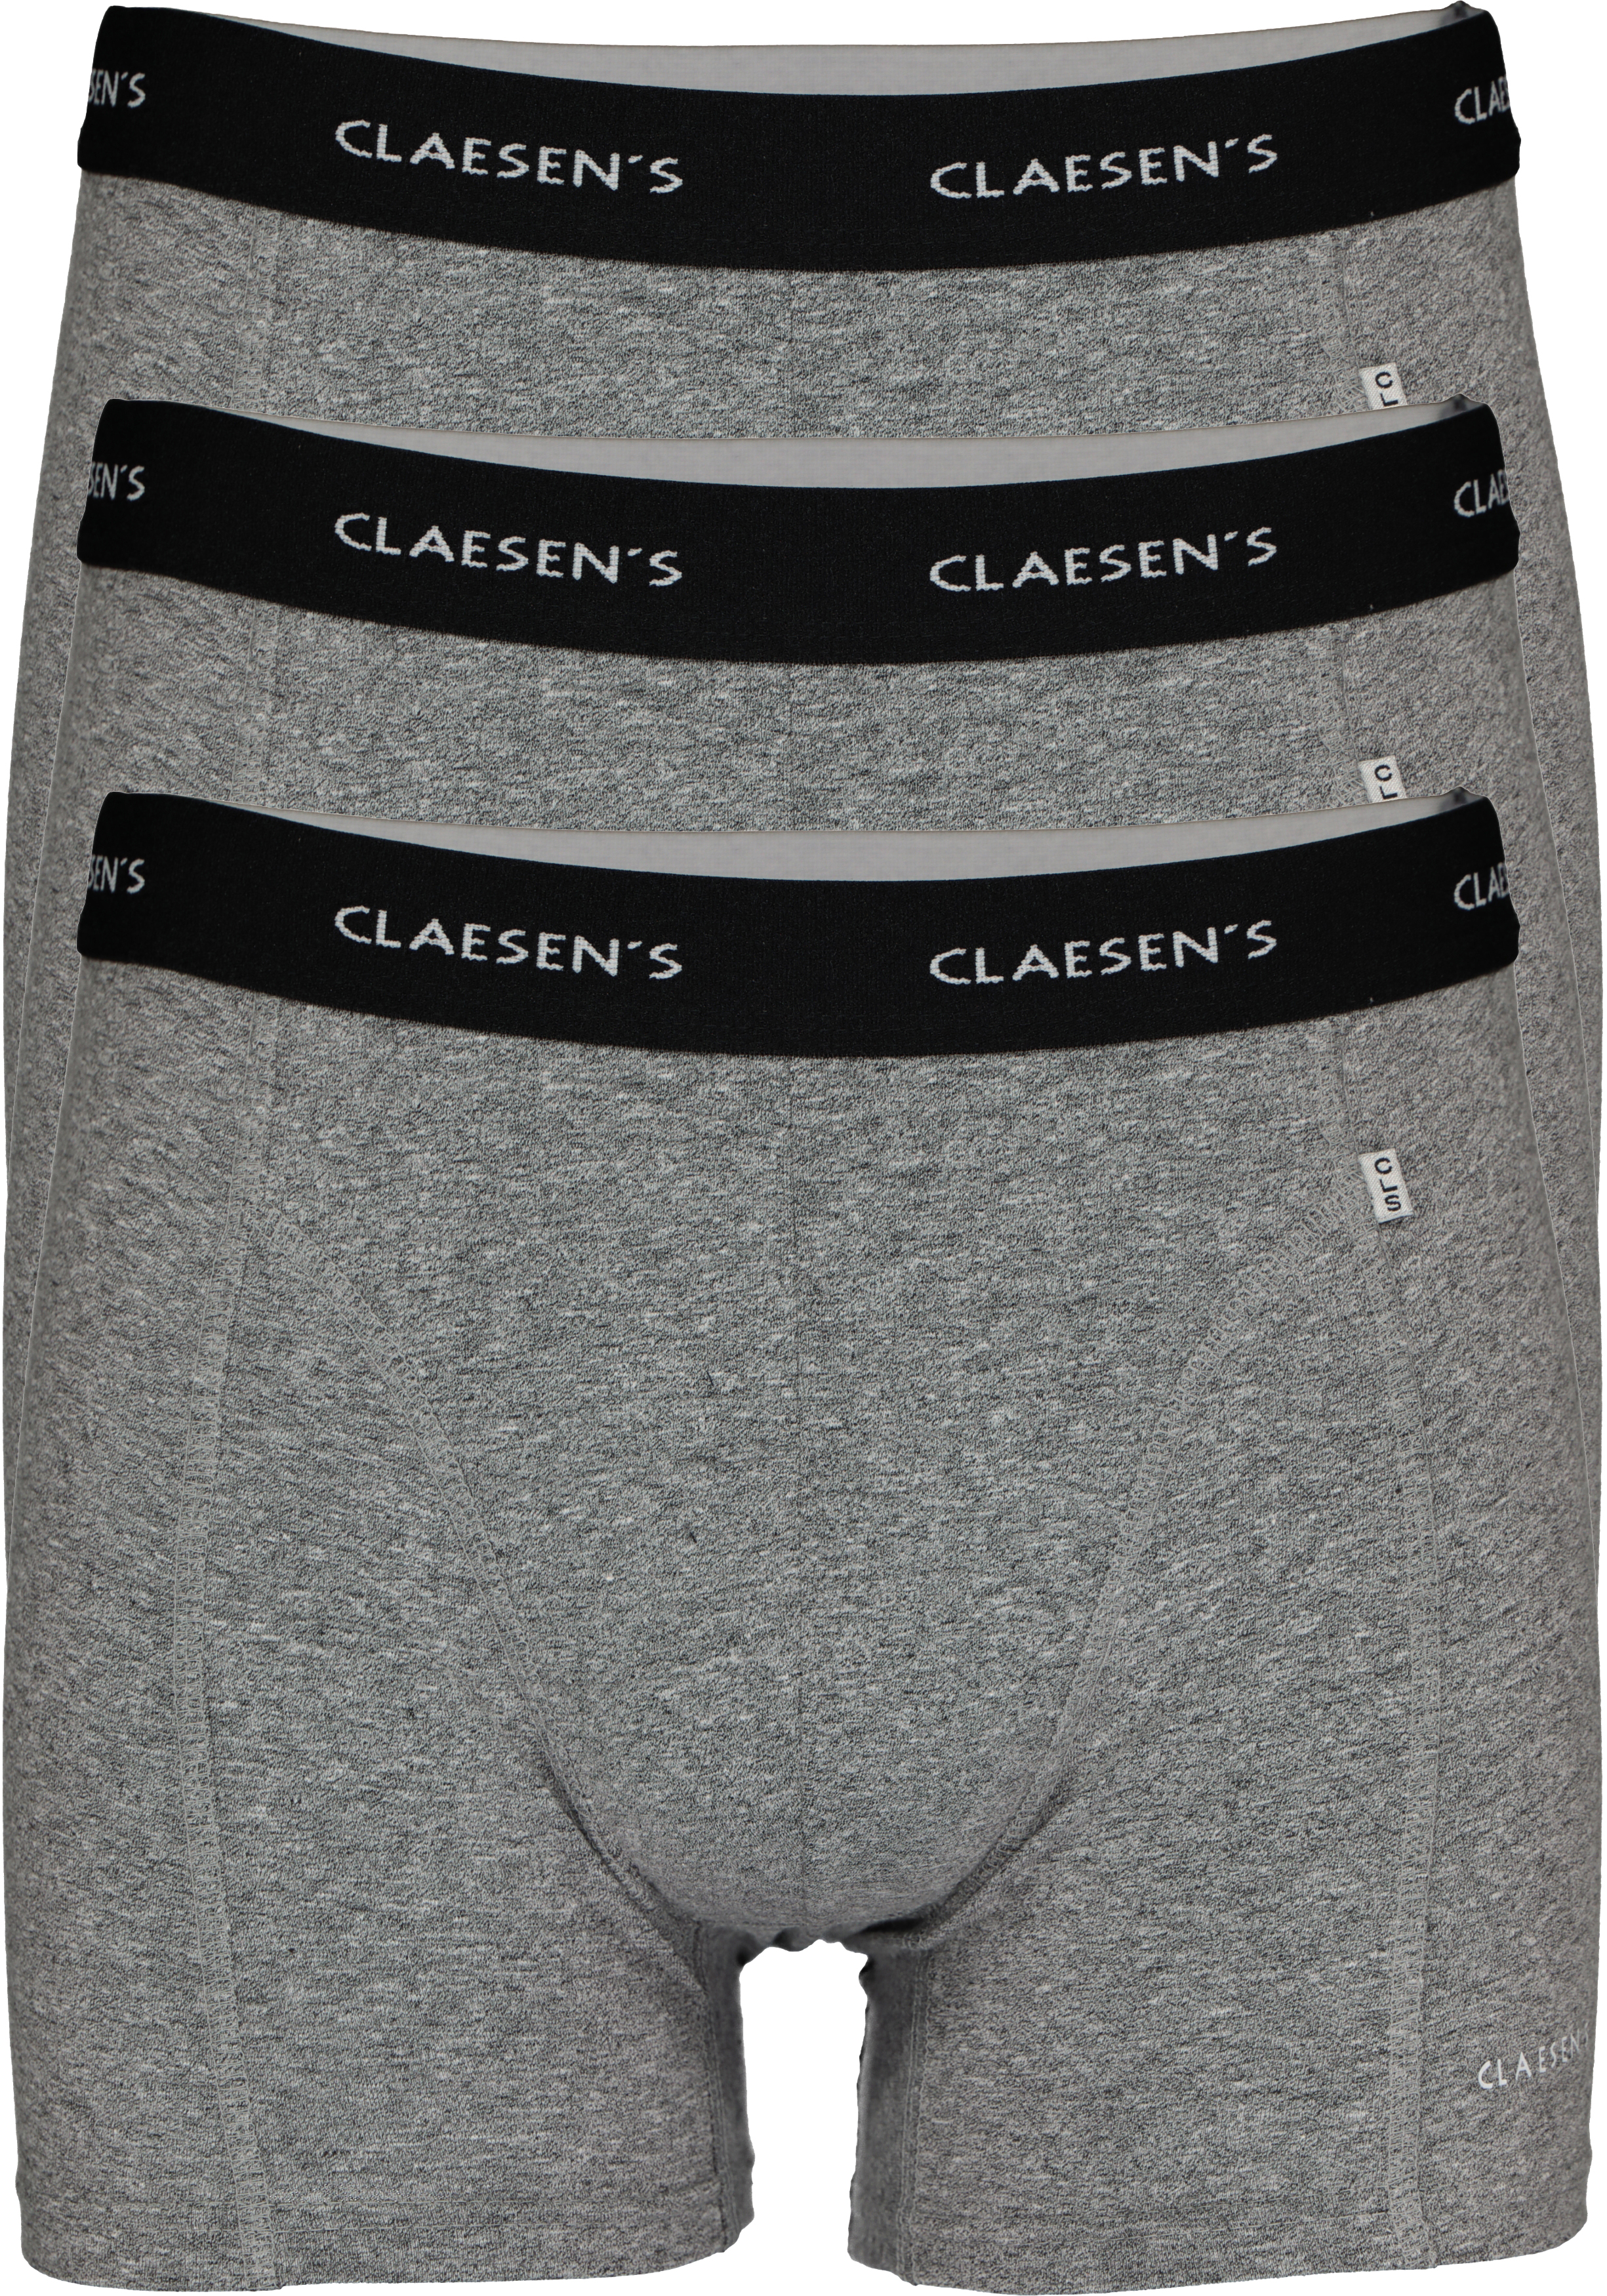 Ga naar het circuit Bekentenis Foto Claesen's Basics boxers (3-pack), heren boxers lang, grijs - SALE tot 70%  korting